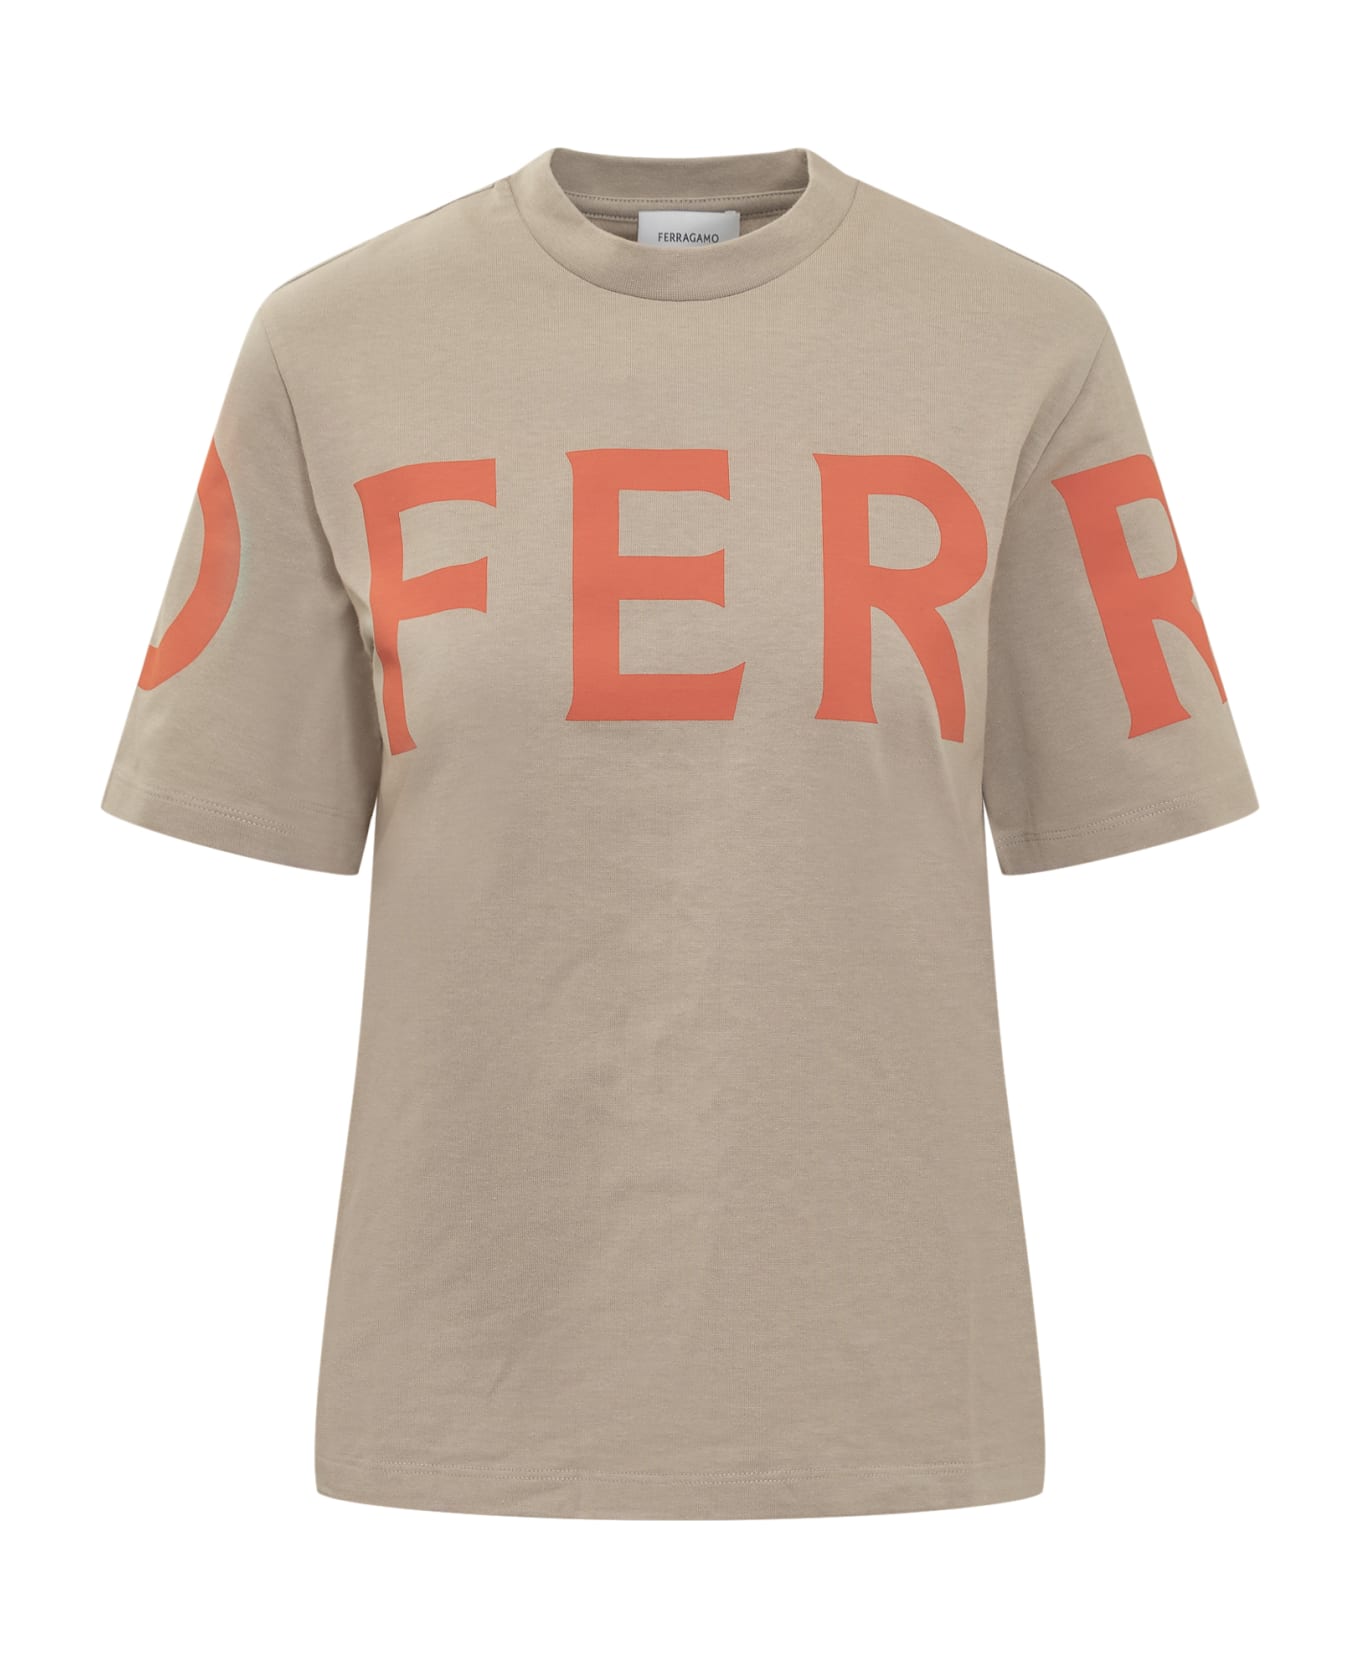 Ferragamo Manifesto T-shirt - BEIGE/SAND/MANDARINO Tシャツ